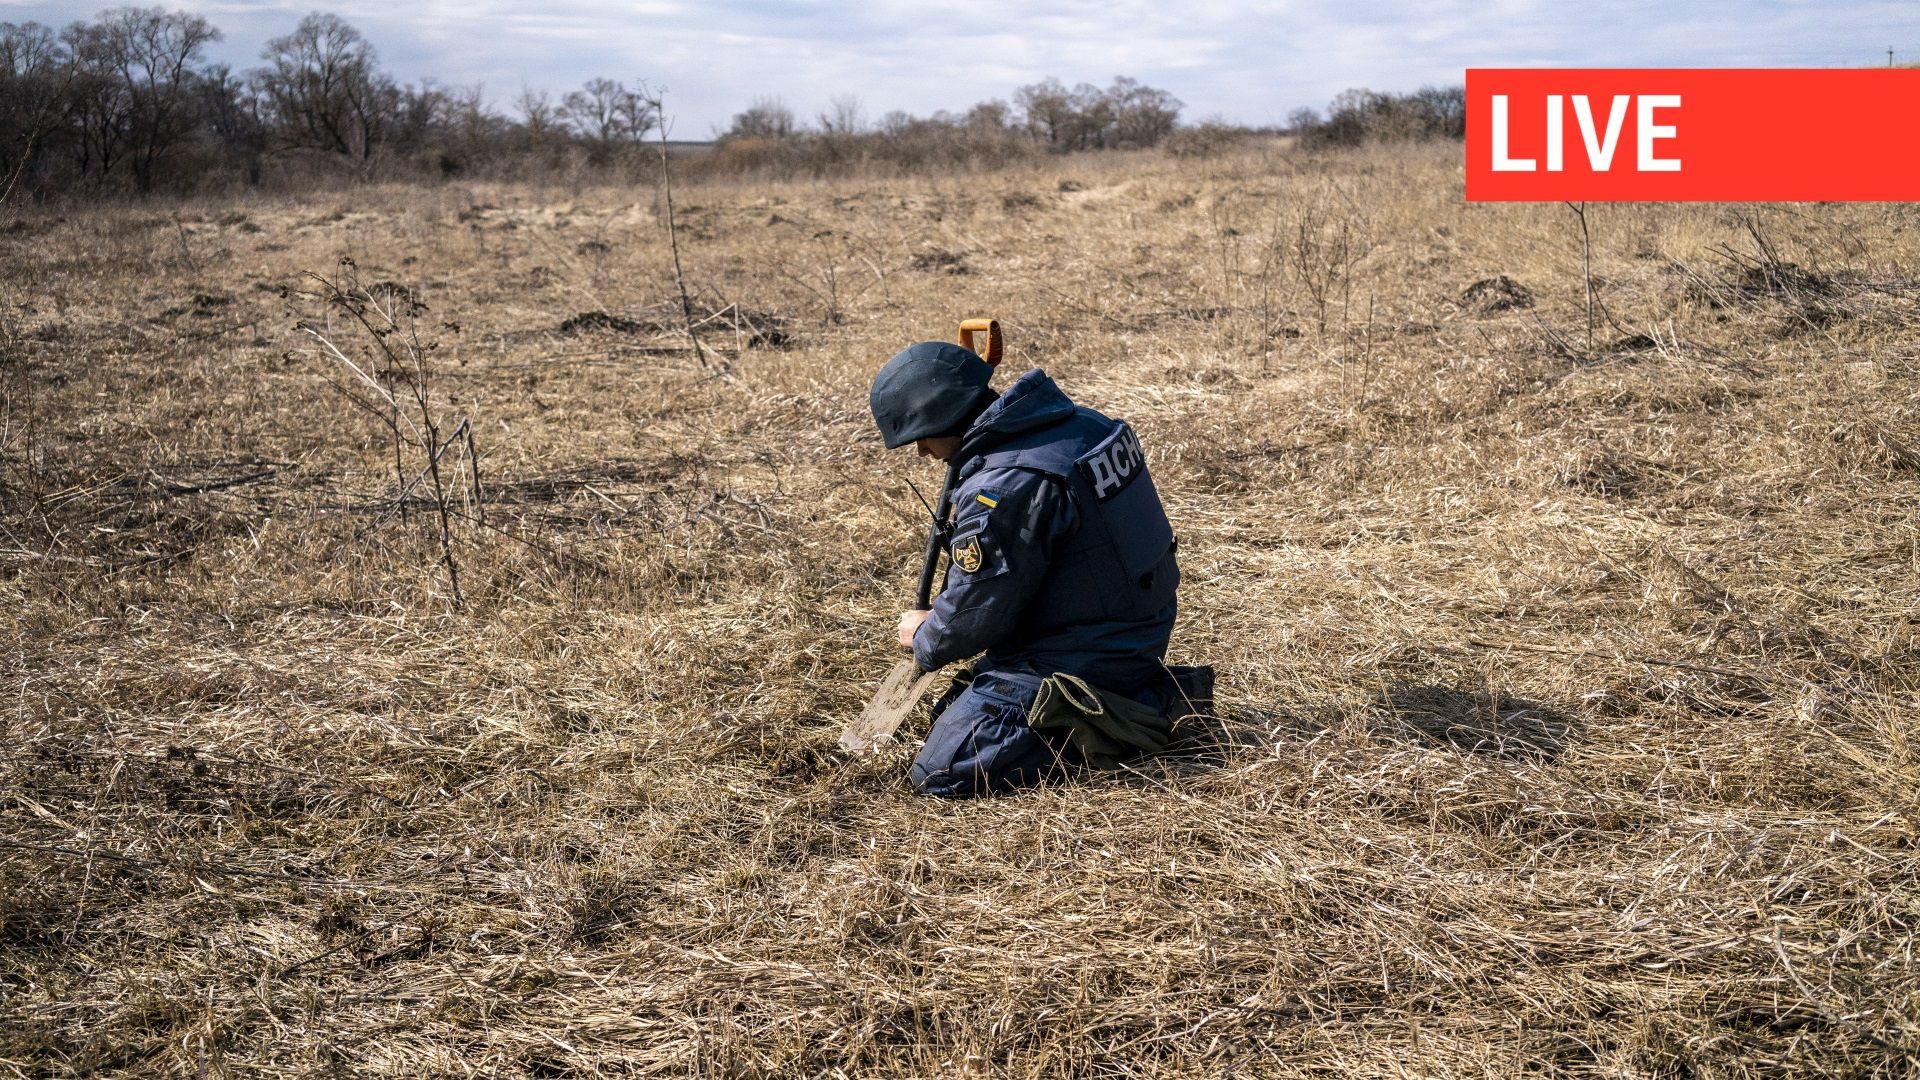 Le 15 mars 2023, un membre de l'équipe de l'Unité des services d'urgence de l'État ukrainien procède au déminage dans le district Industrialnyi de la région de Kharkiv.